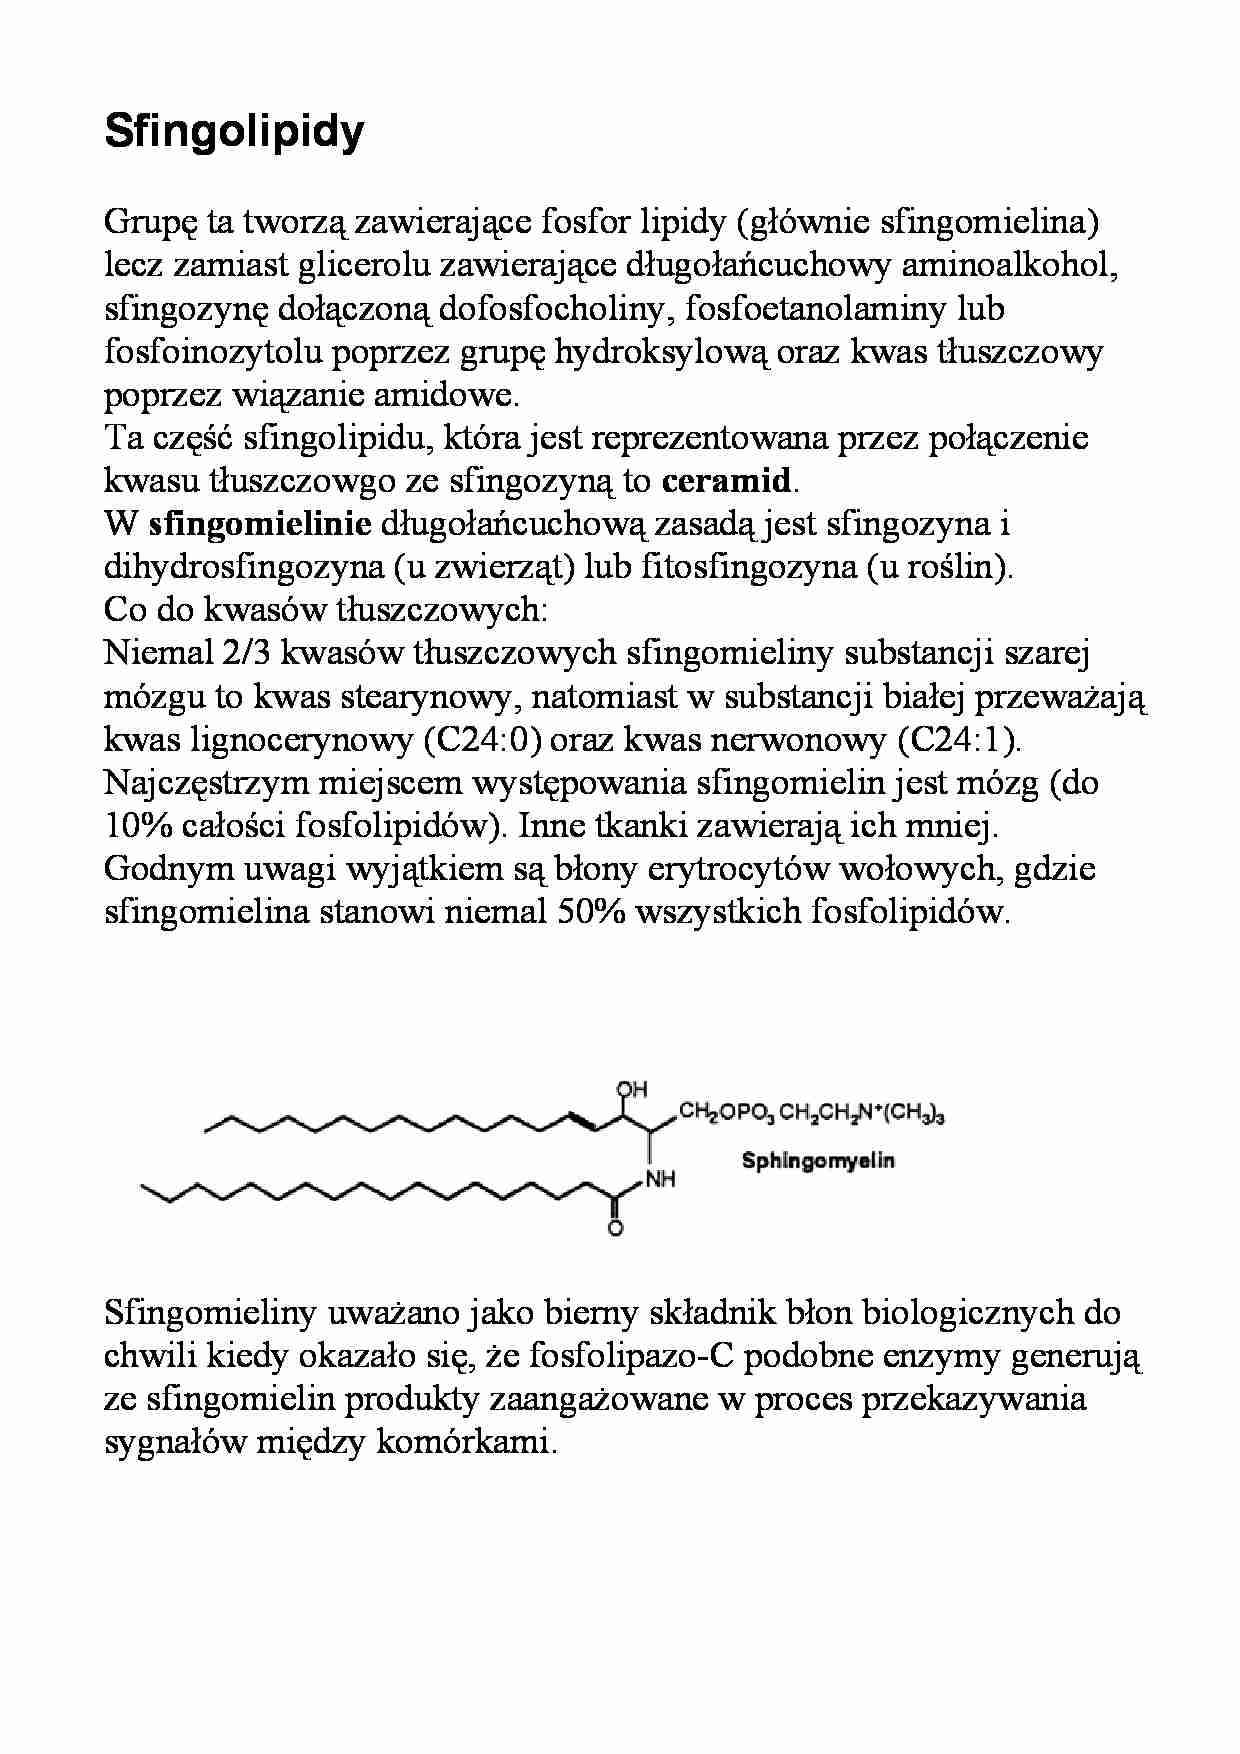 Lipidy - sfingolipidy - strona 1